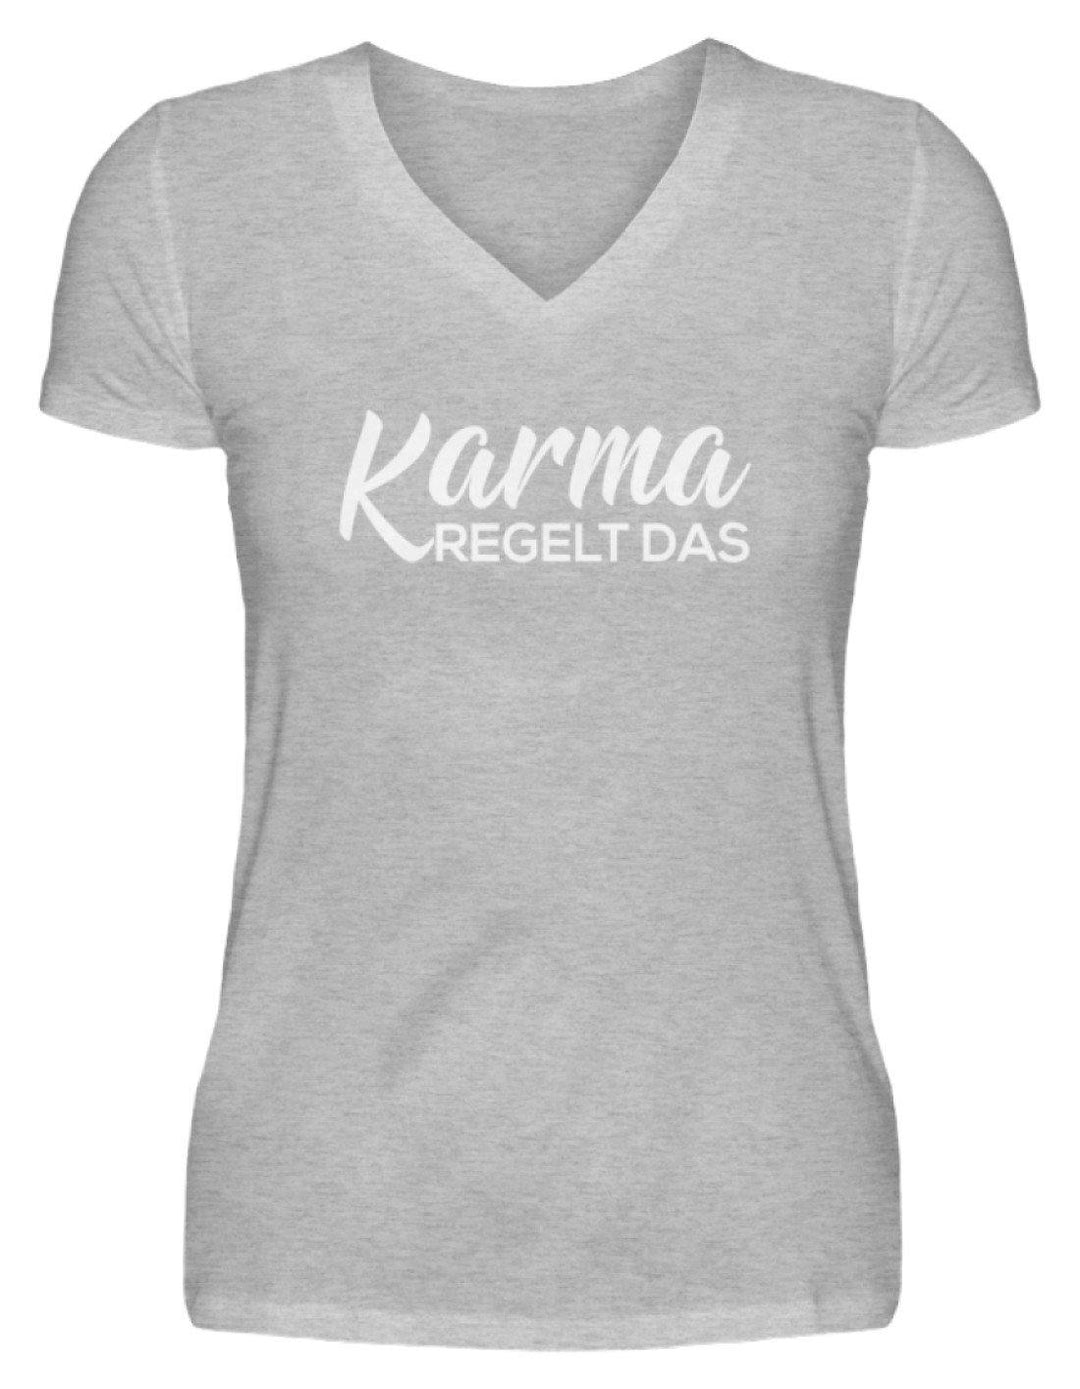 Karma regelt das - Words on Shirts  - V-Neck Damenshirt - Words on Shirts Sag es mit dem Mittelfinger Shirts Hoodies Sweatshirt Taschen Gymsack Spruch Sprüche Statement